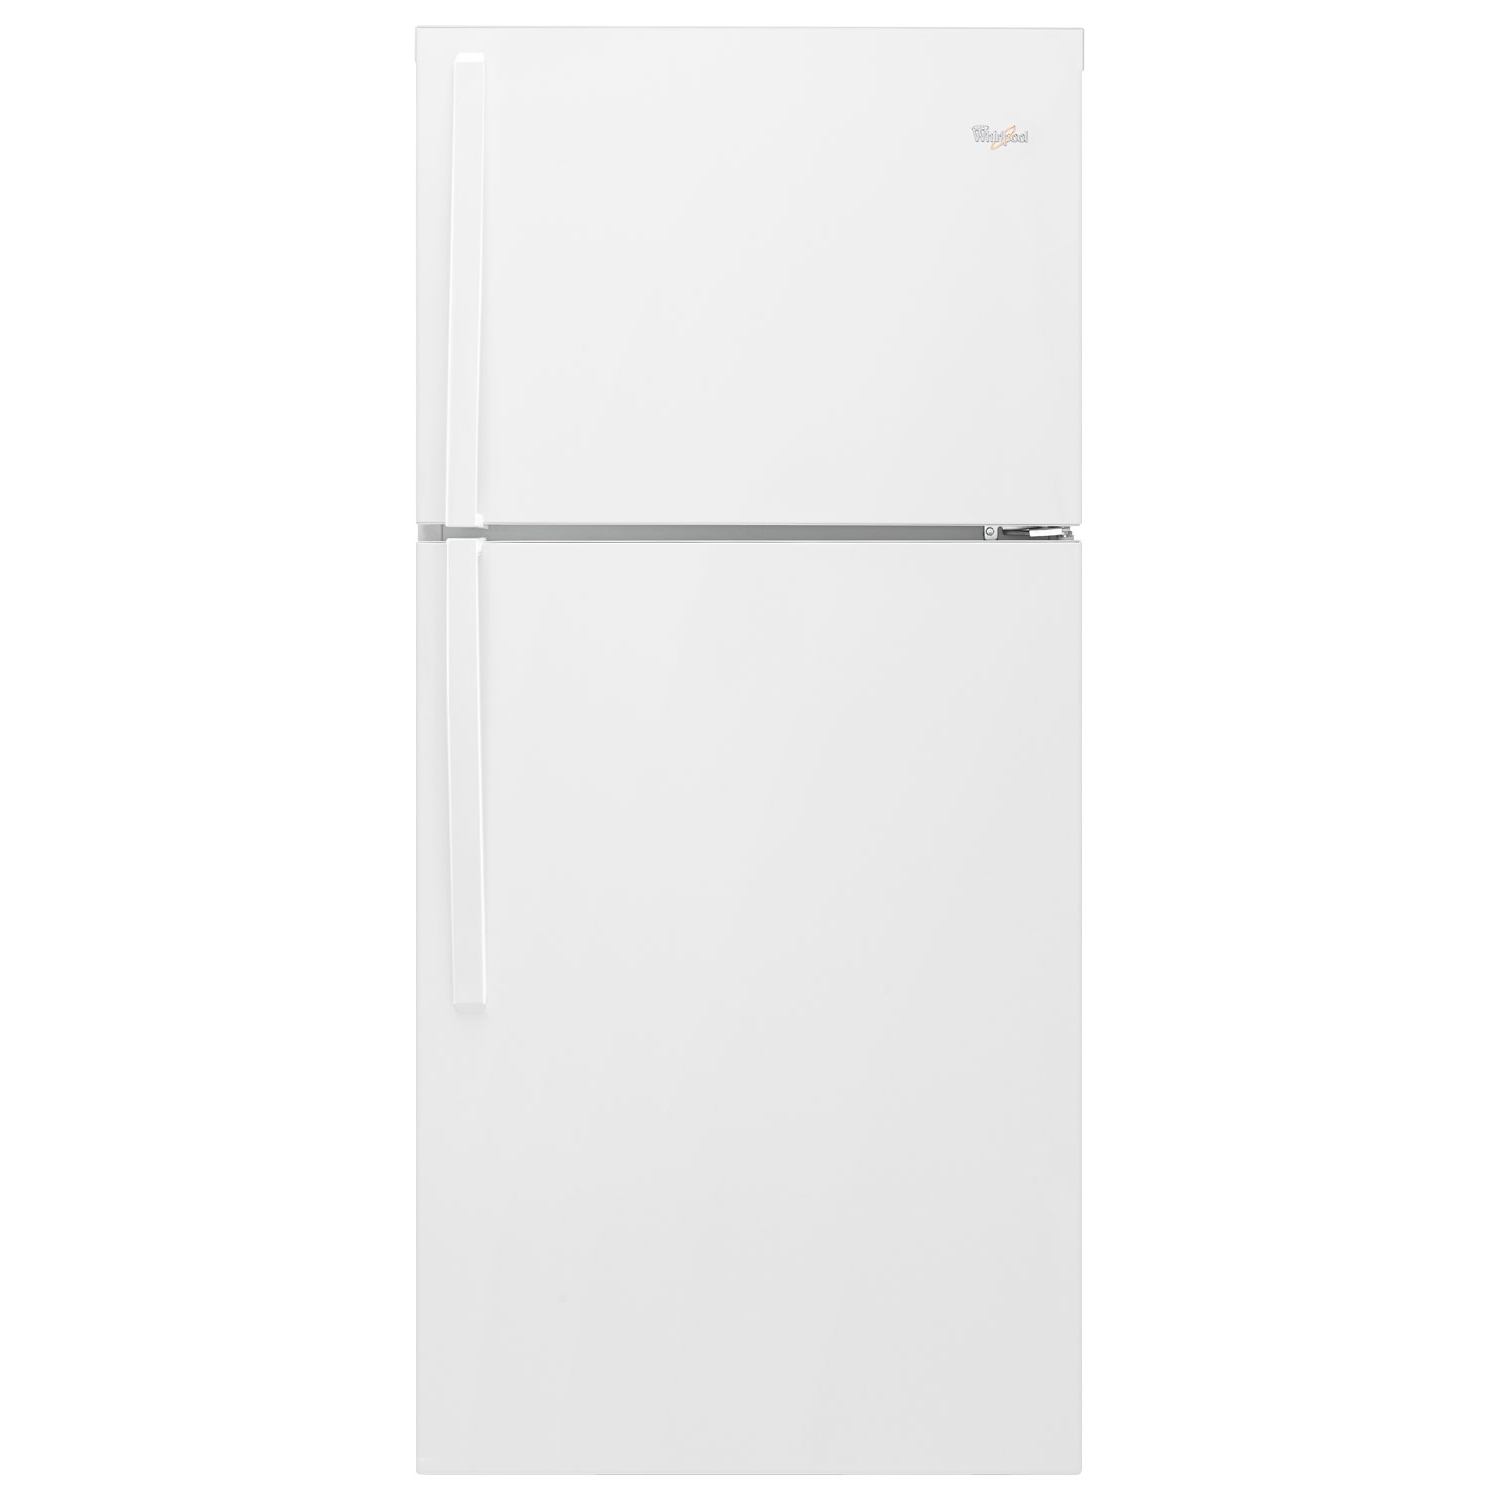 Buy Whirlpool Refrigerator WRT549SZDW